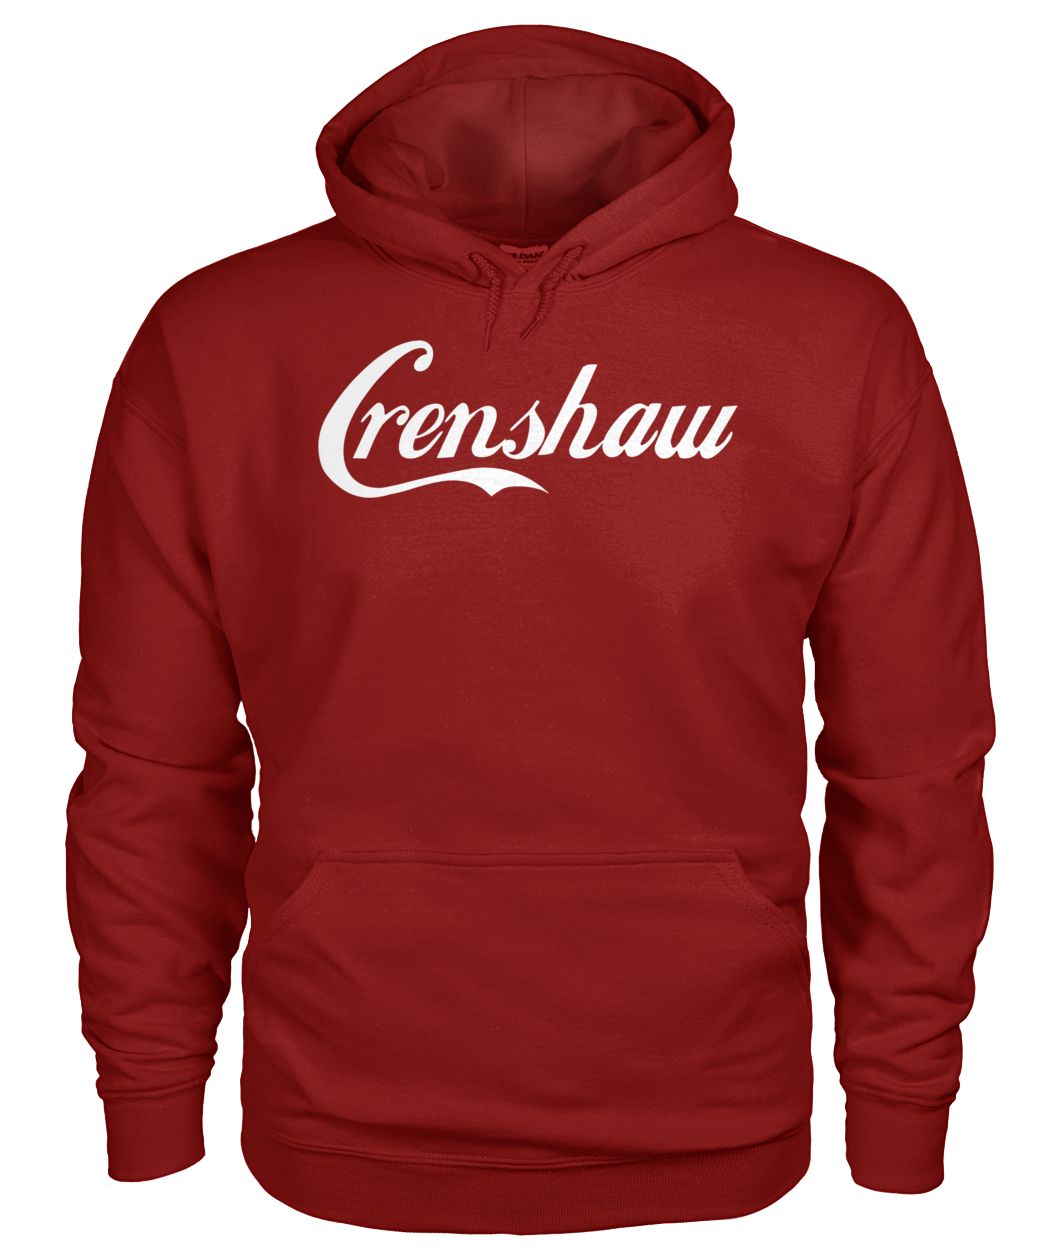 Crenshaw cali california gildan hoodie